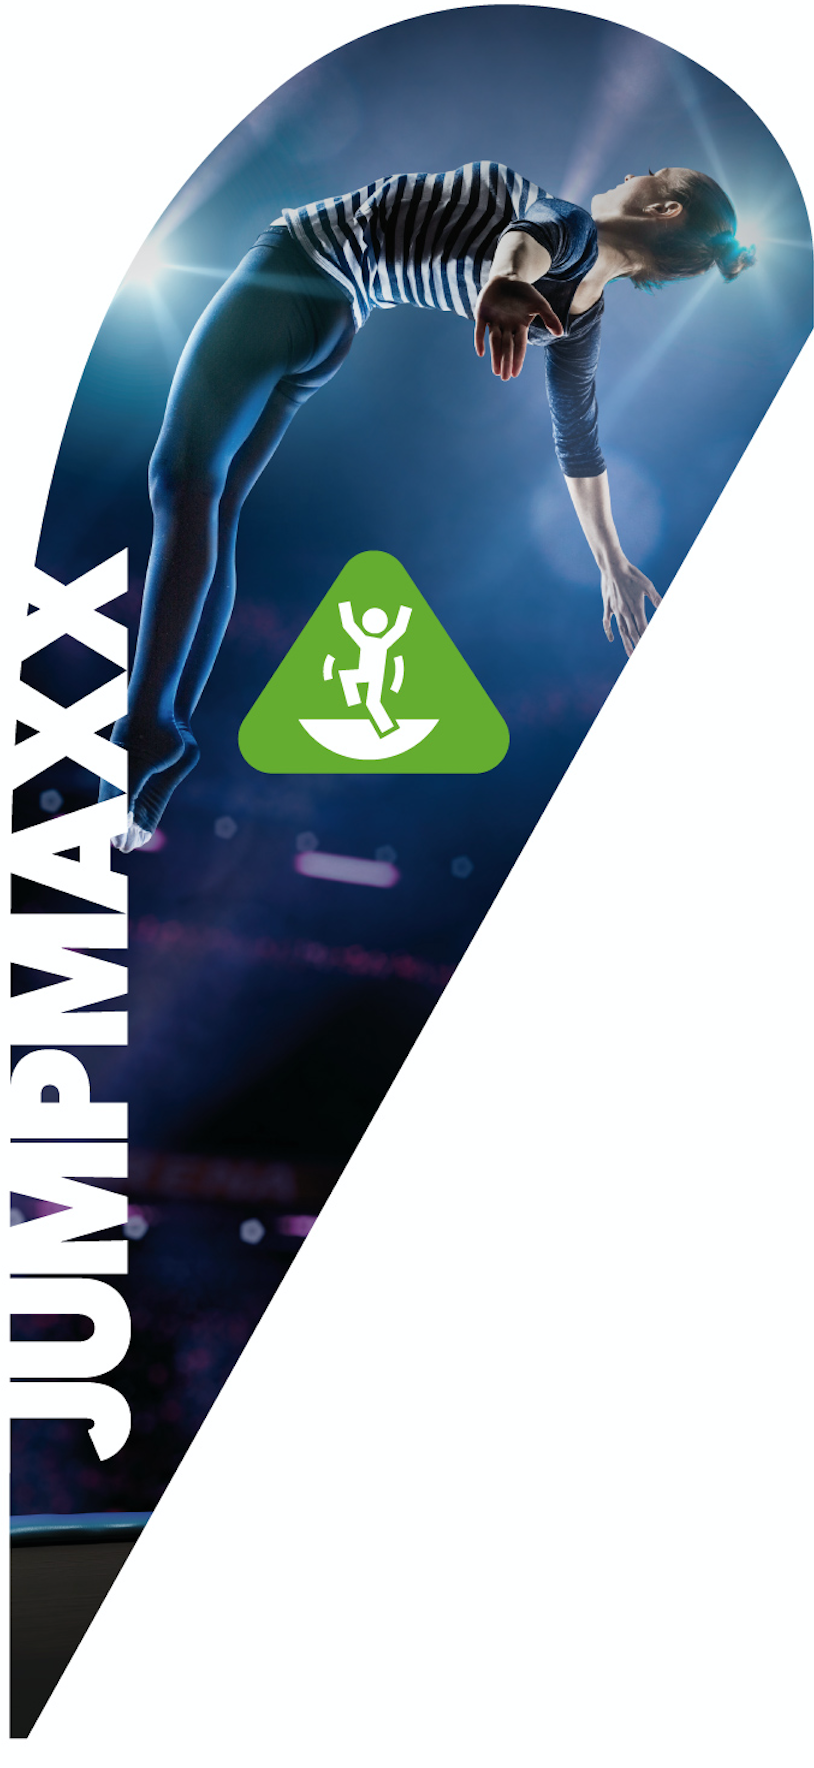 http://www.maxx-e.com/Wien/holzmanngasse_1/aktivitaeten/jumpmaxx